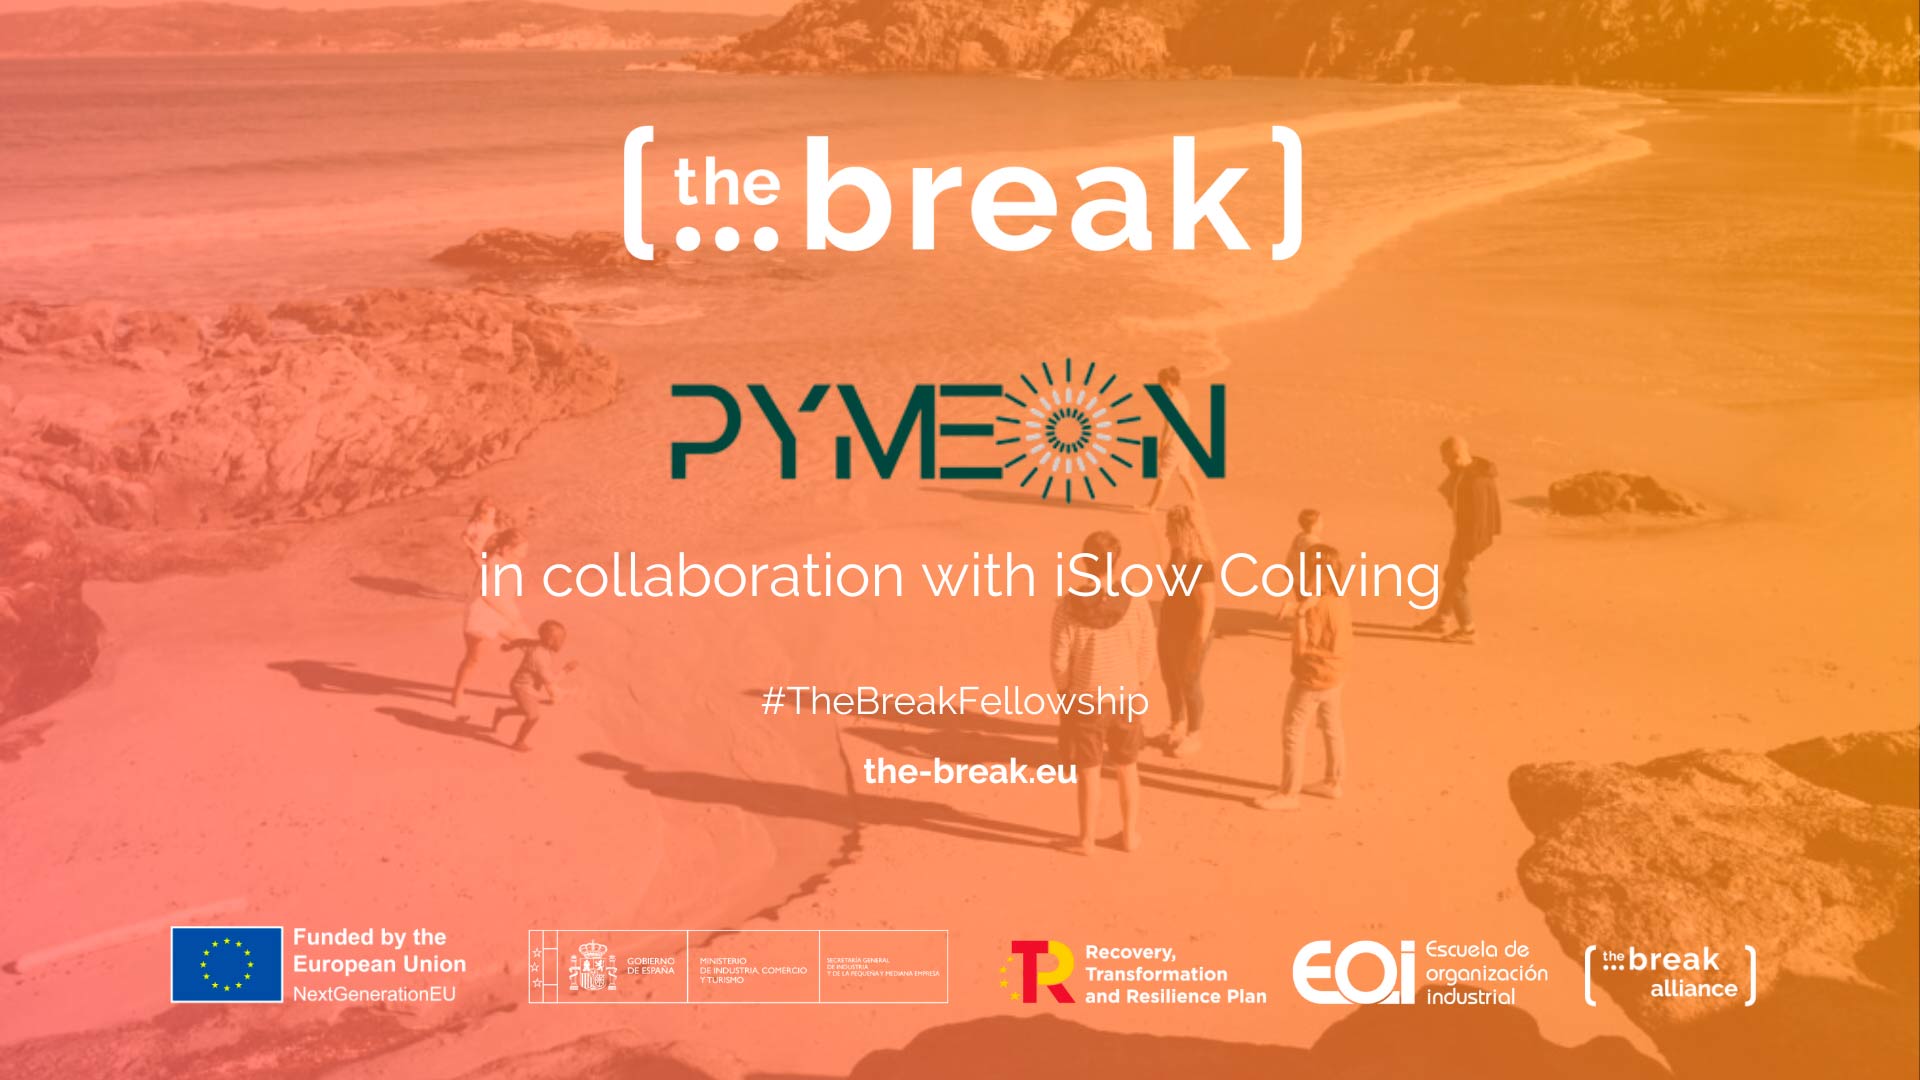 PymeOn, seleccionada como organización de emprendimiento en el programa europeo The Break